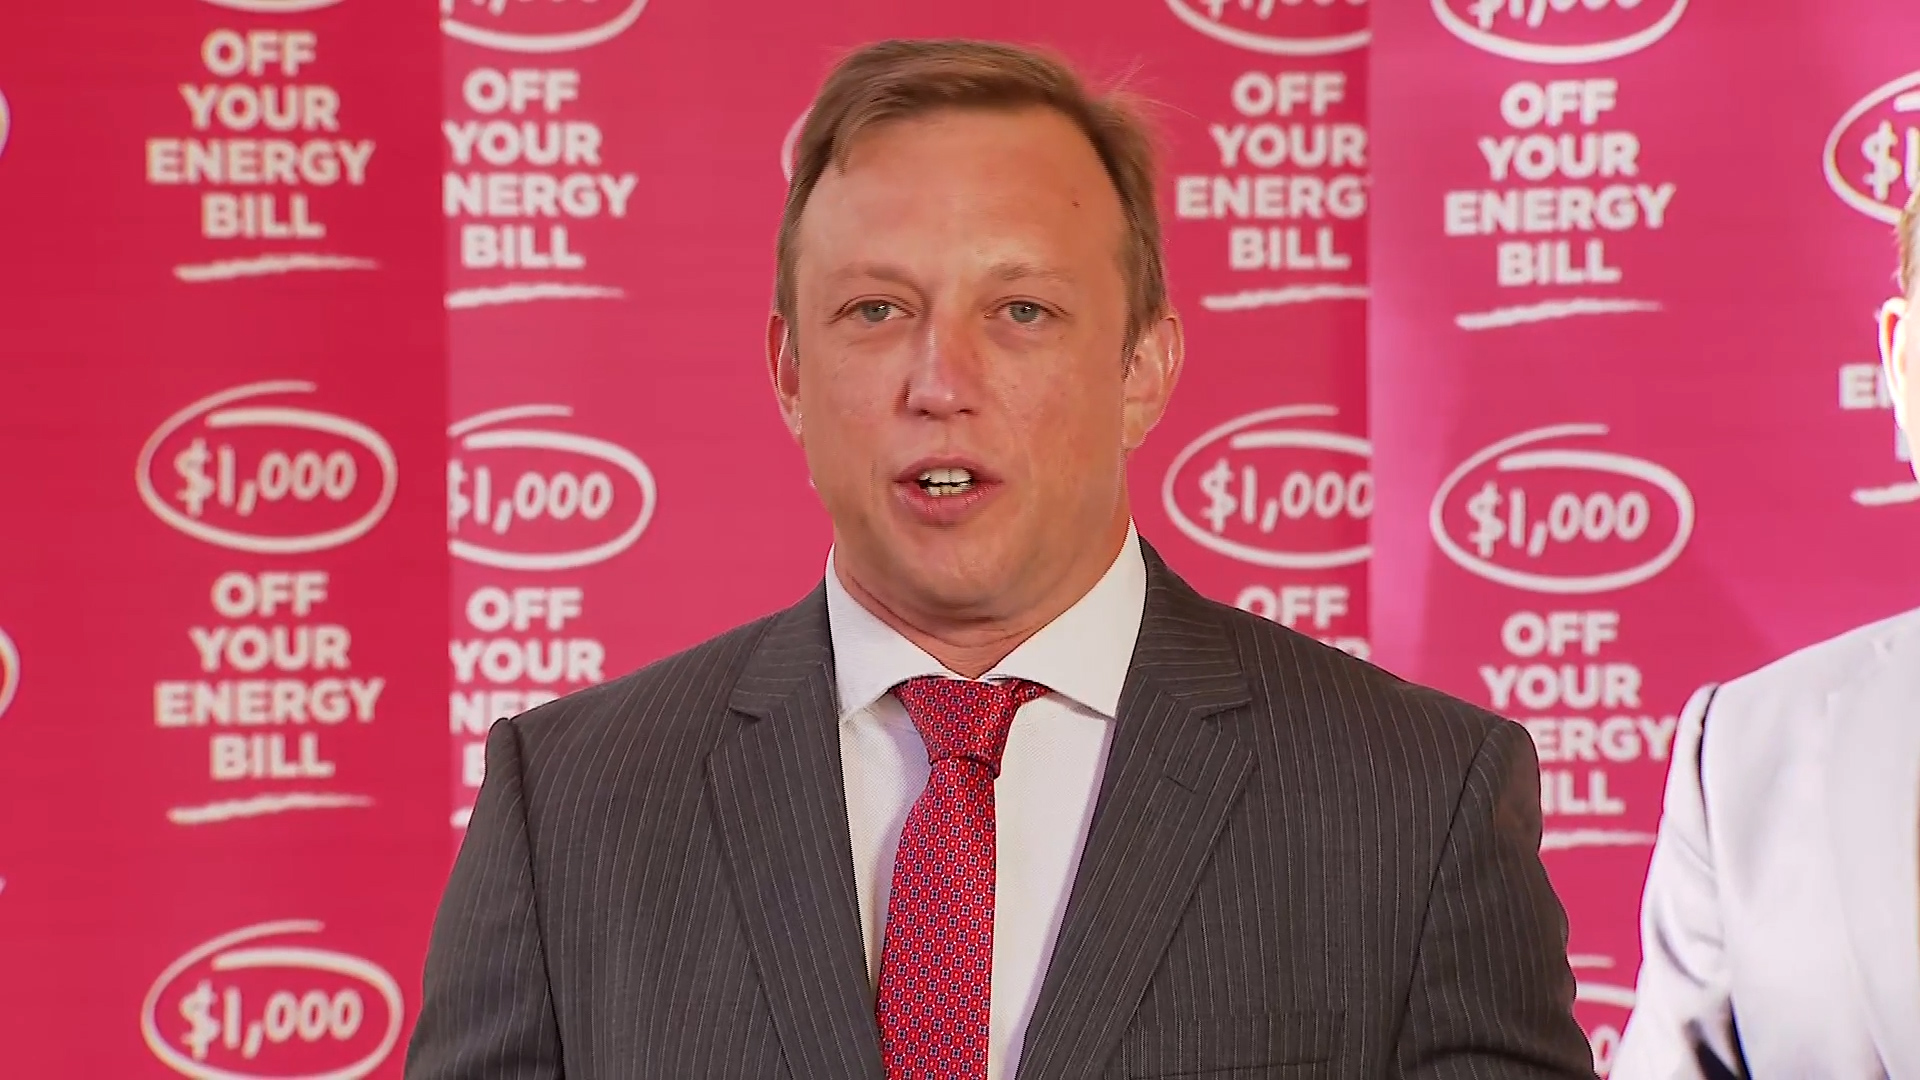 Queenslanders to get $1000 off energy bills under new rebate